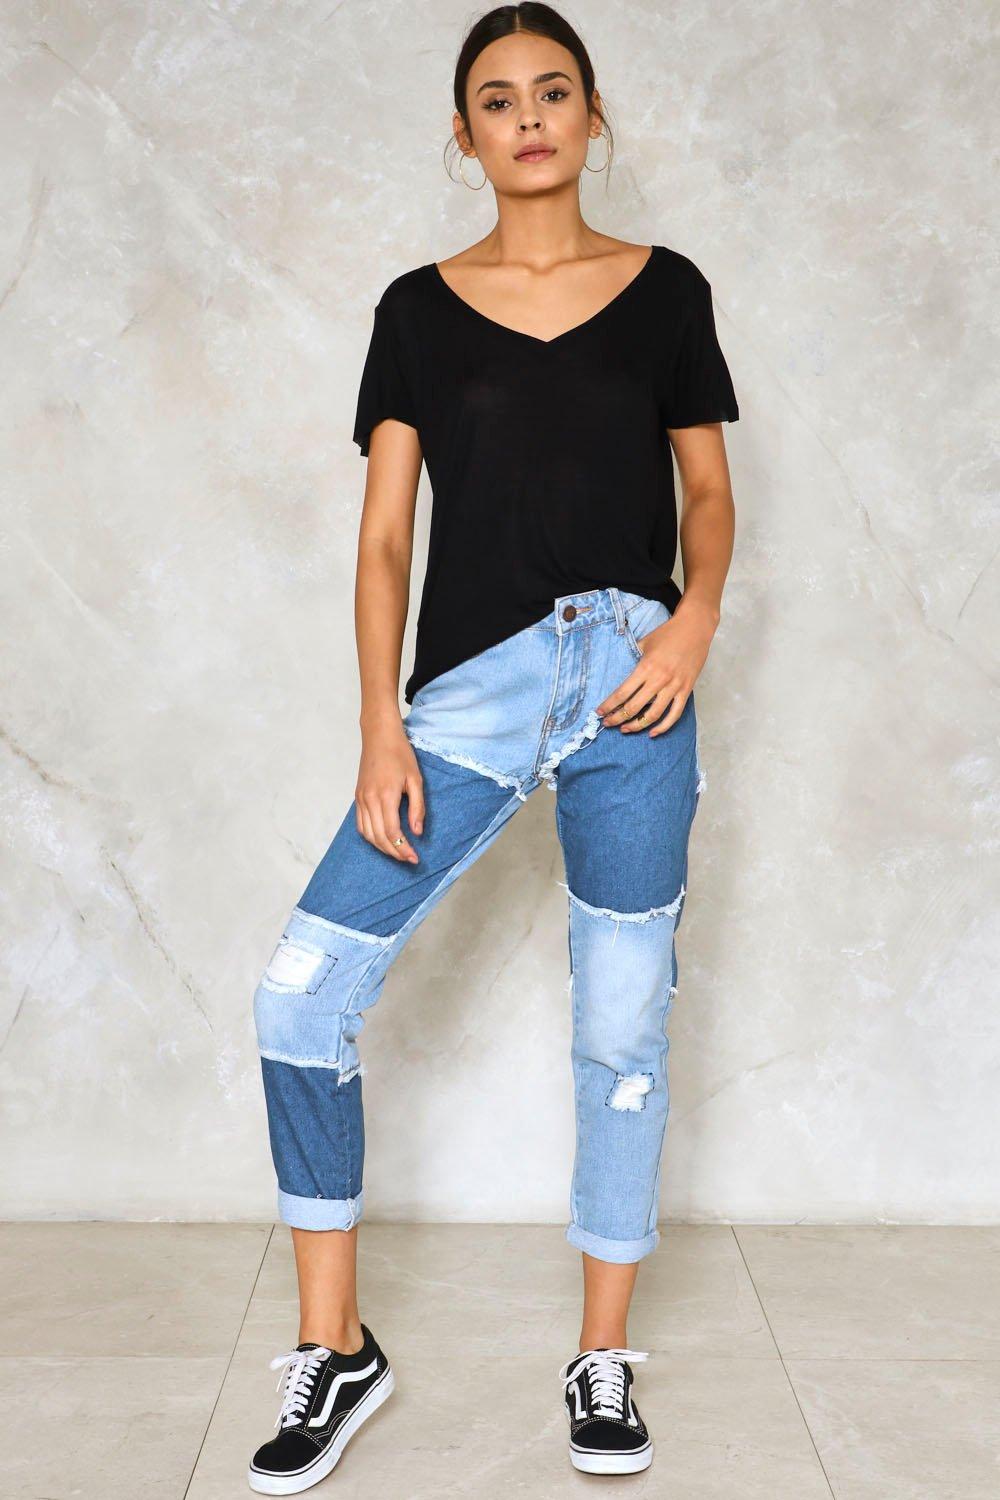  Celana  Jeans  yang Sedang Trend Saat Ini